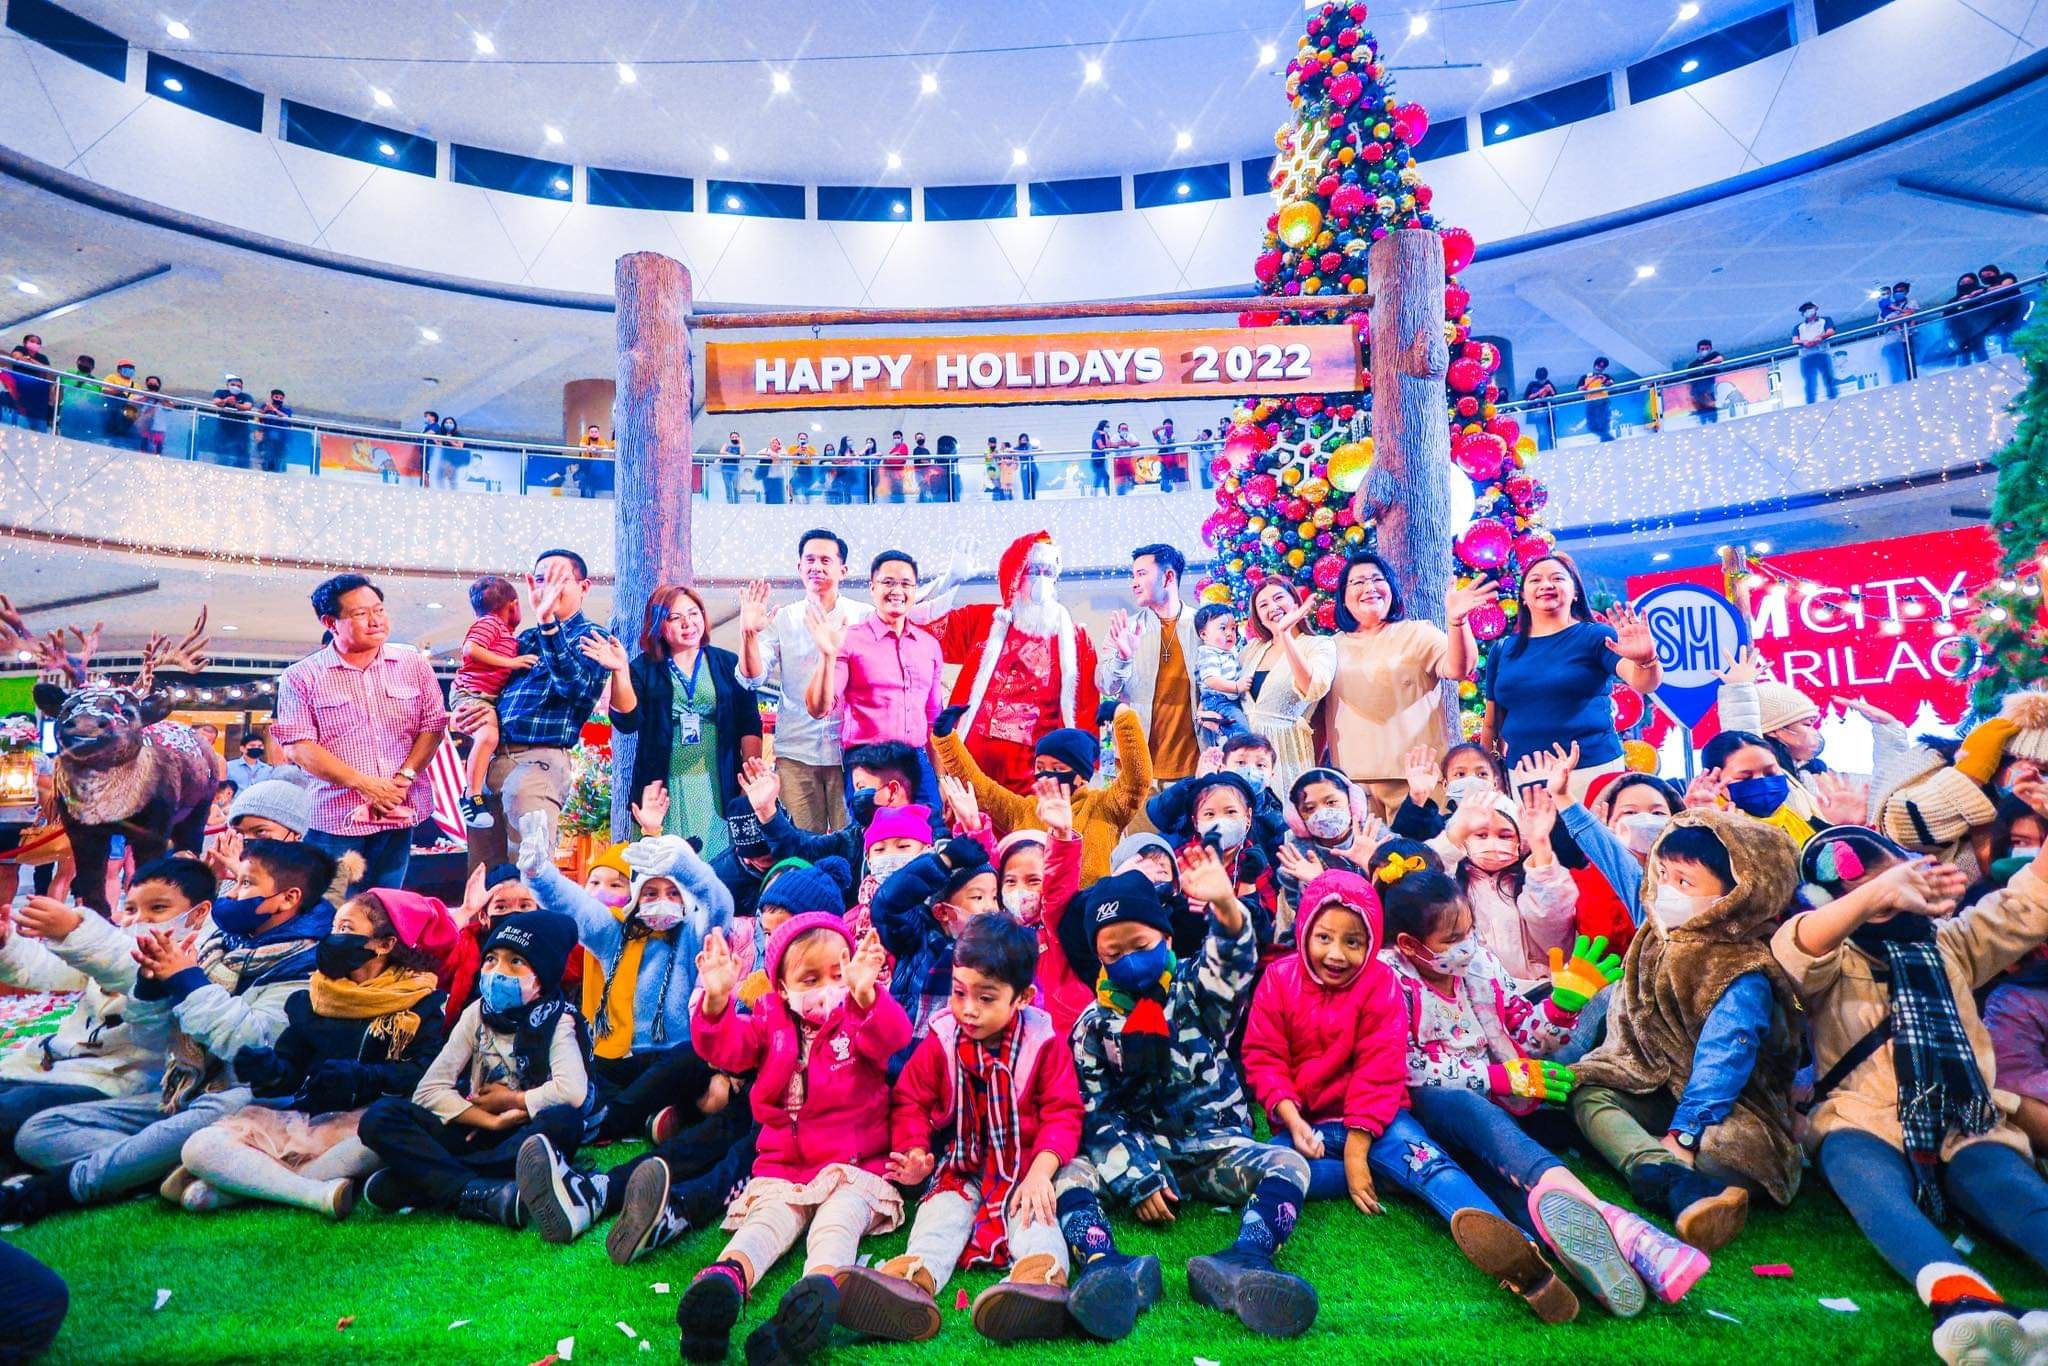 SM City Marilao transforms mall atrium to a winter holiday camp destination